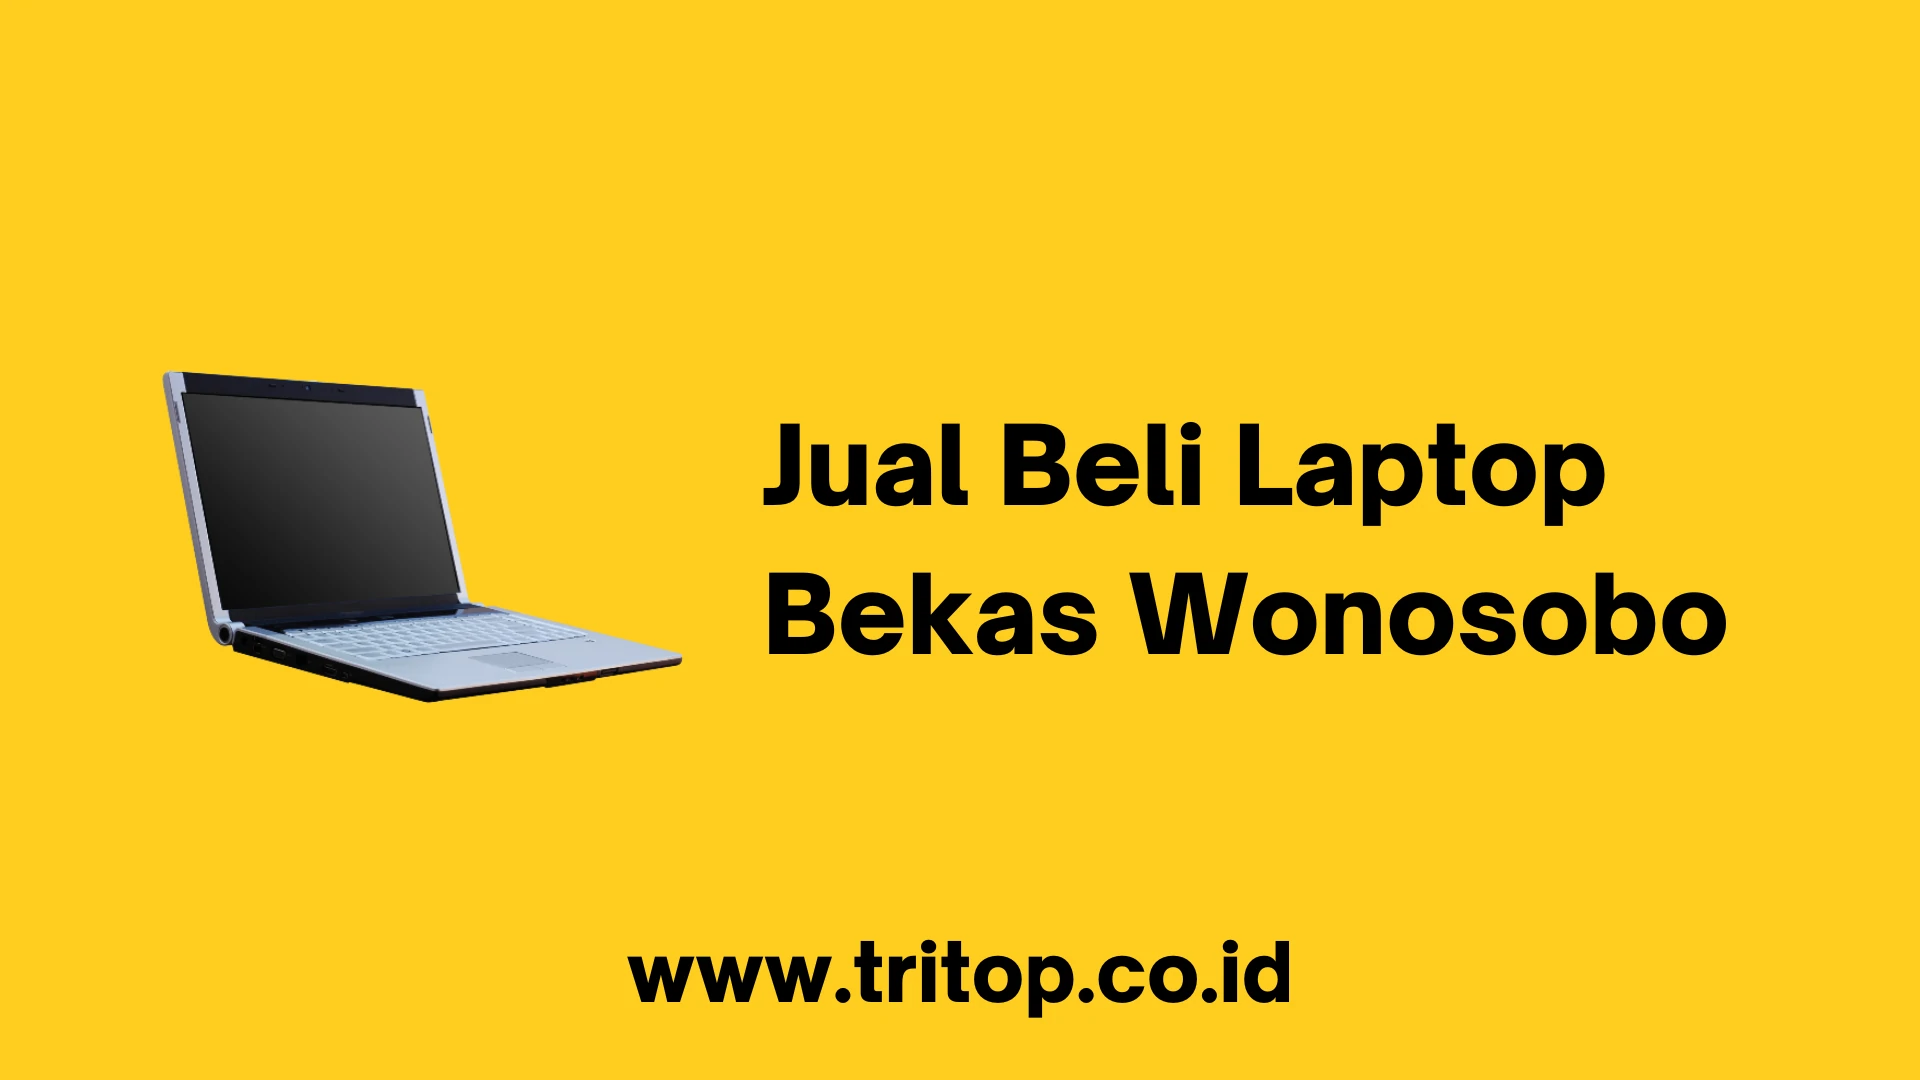 Jual Beli Laptop Bekas Wonosobo